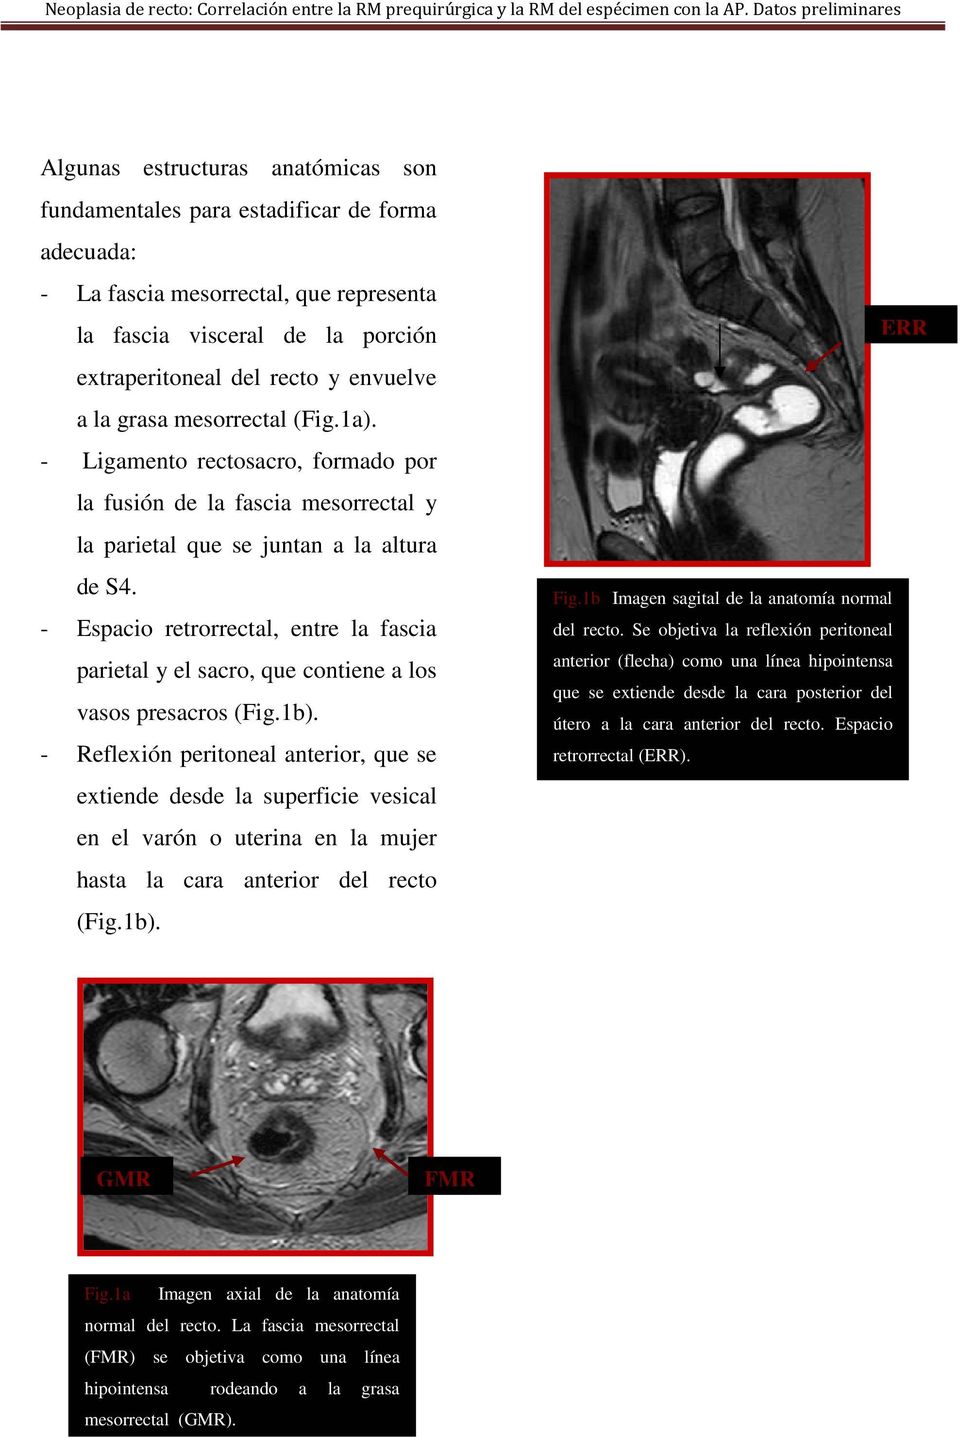 - Espacio retrorrectal, entre la fascia parietal y el sacro, que contiene a los vasos presacros (Fig.1b).